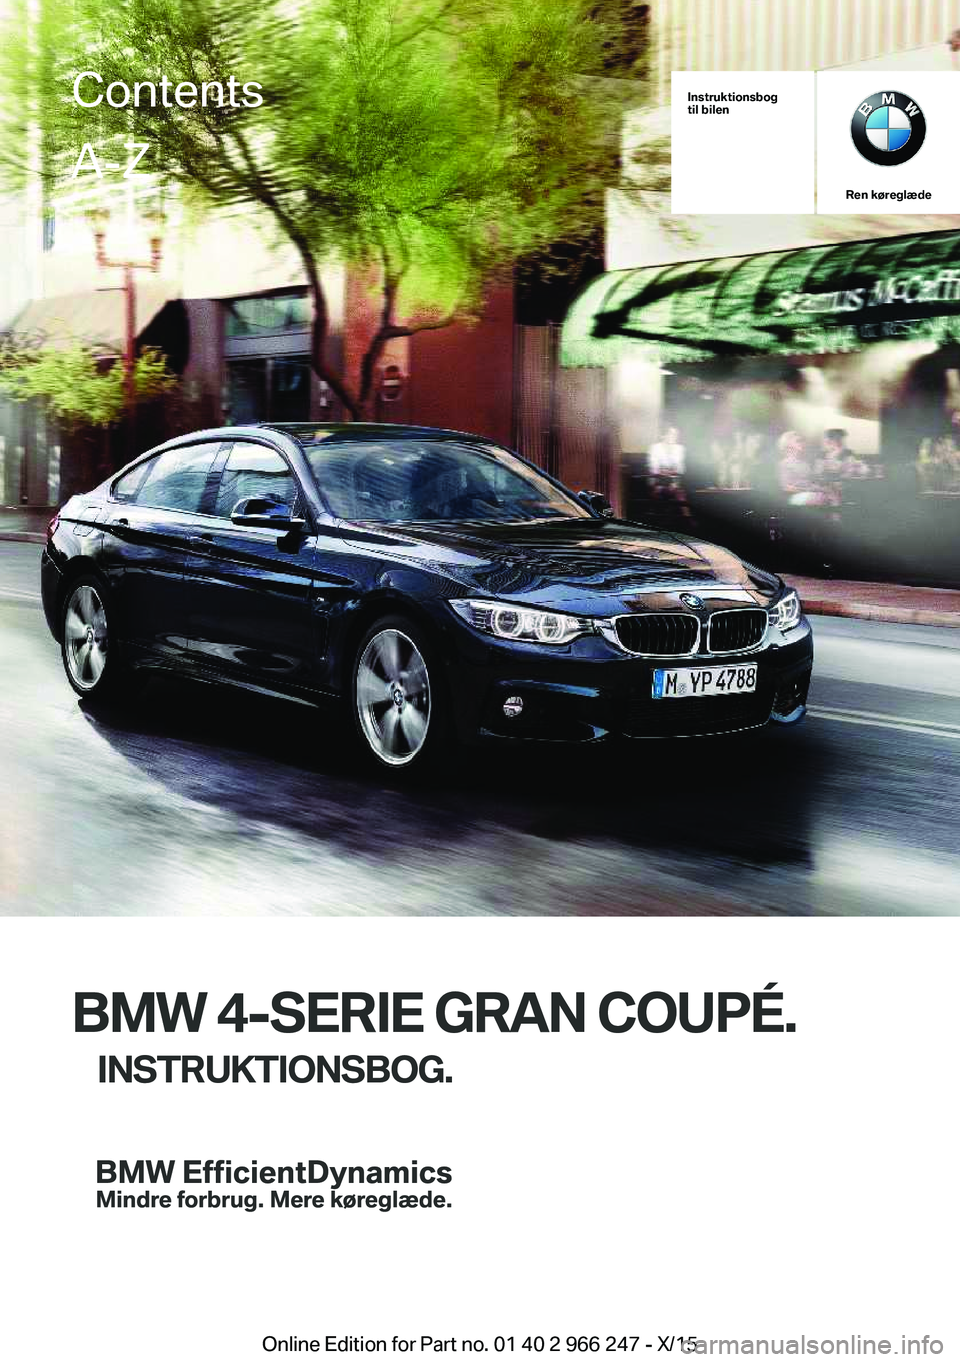 BMW 4 SERIES GRAN COUPE 2016  InstruktionsbØger (in Danish) Instruktionsbog
til bilen
Ren køreglæde
BMW 4-SERIE GRAN COUPÉ.
INSTRUKTIONSBOG.
ContentsA-Z
Online Edition for Part no. 01 40 2 966 247 - X/15   